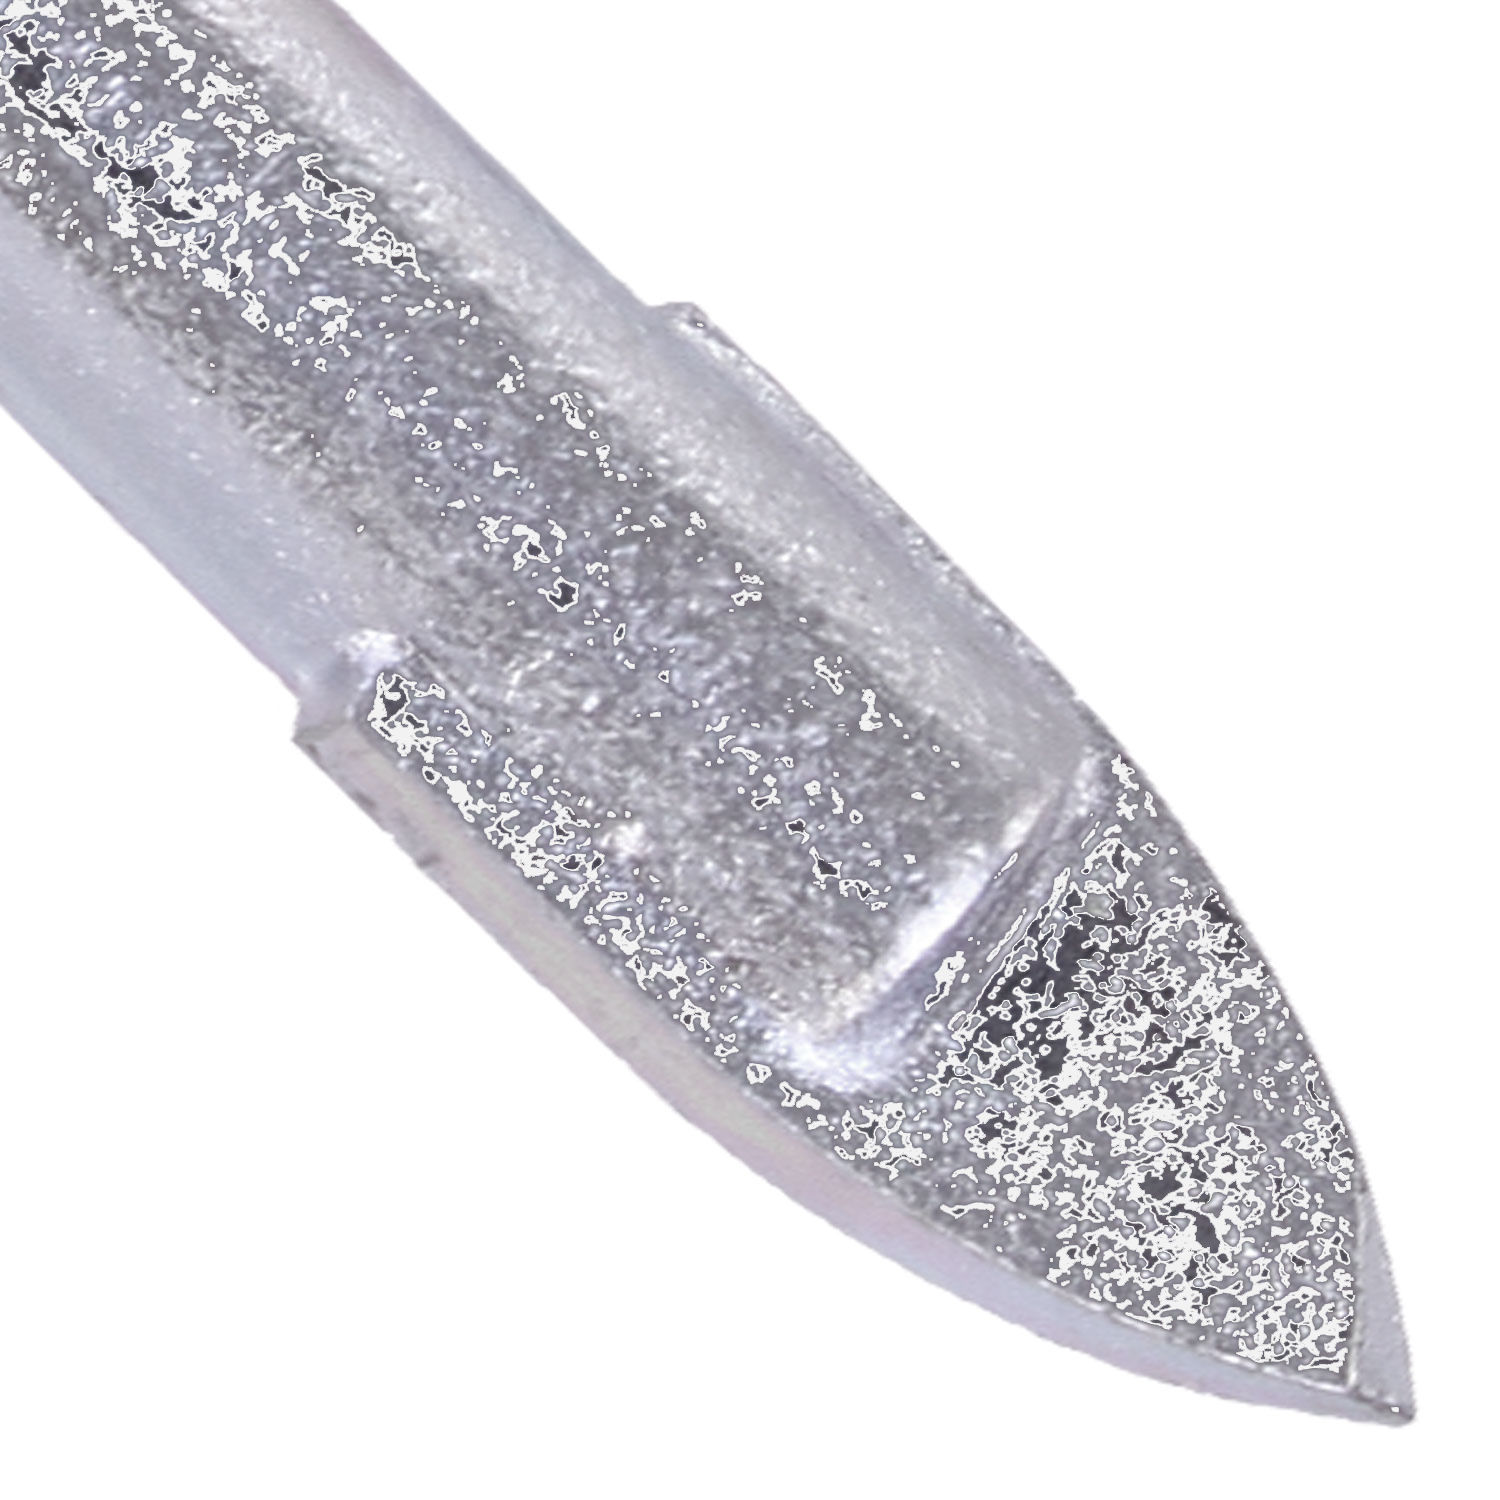 1 KEIL Glasbohrer Ø = 6mm, Länge = 58mm - diamantgeschliffene Hartmetallplatte